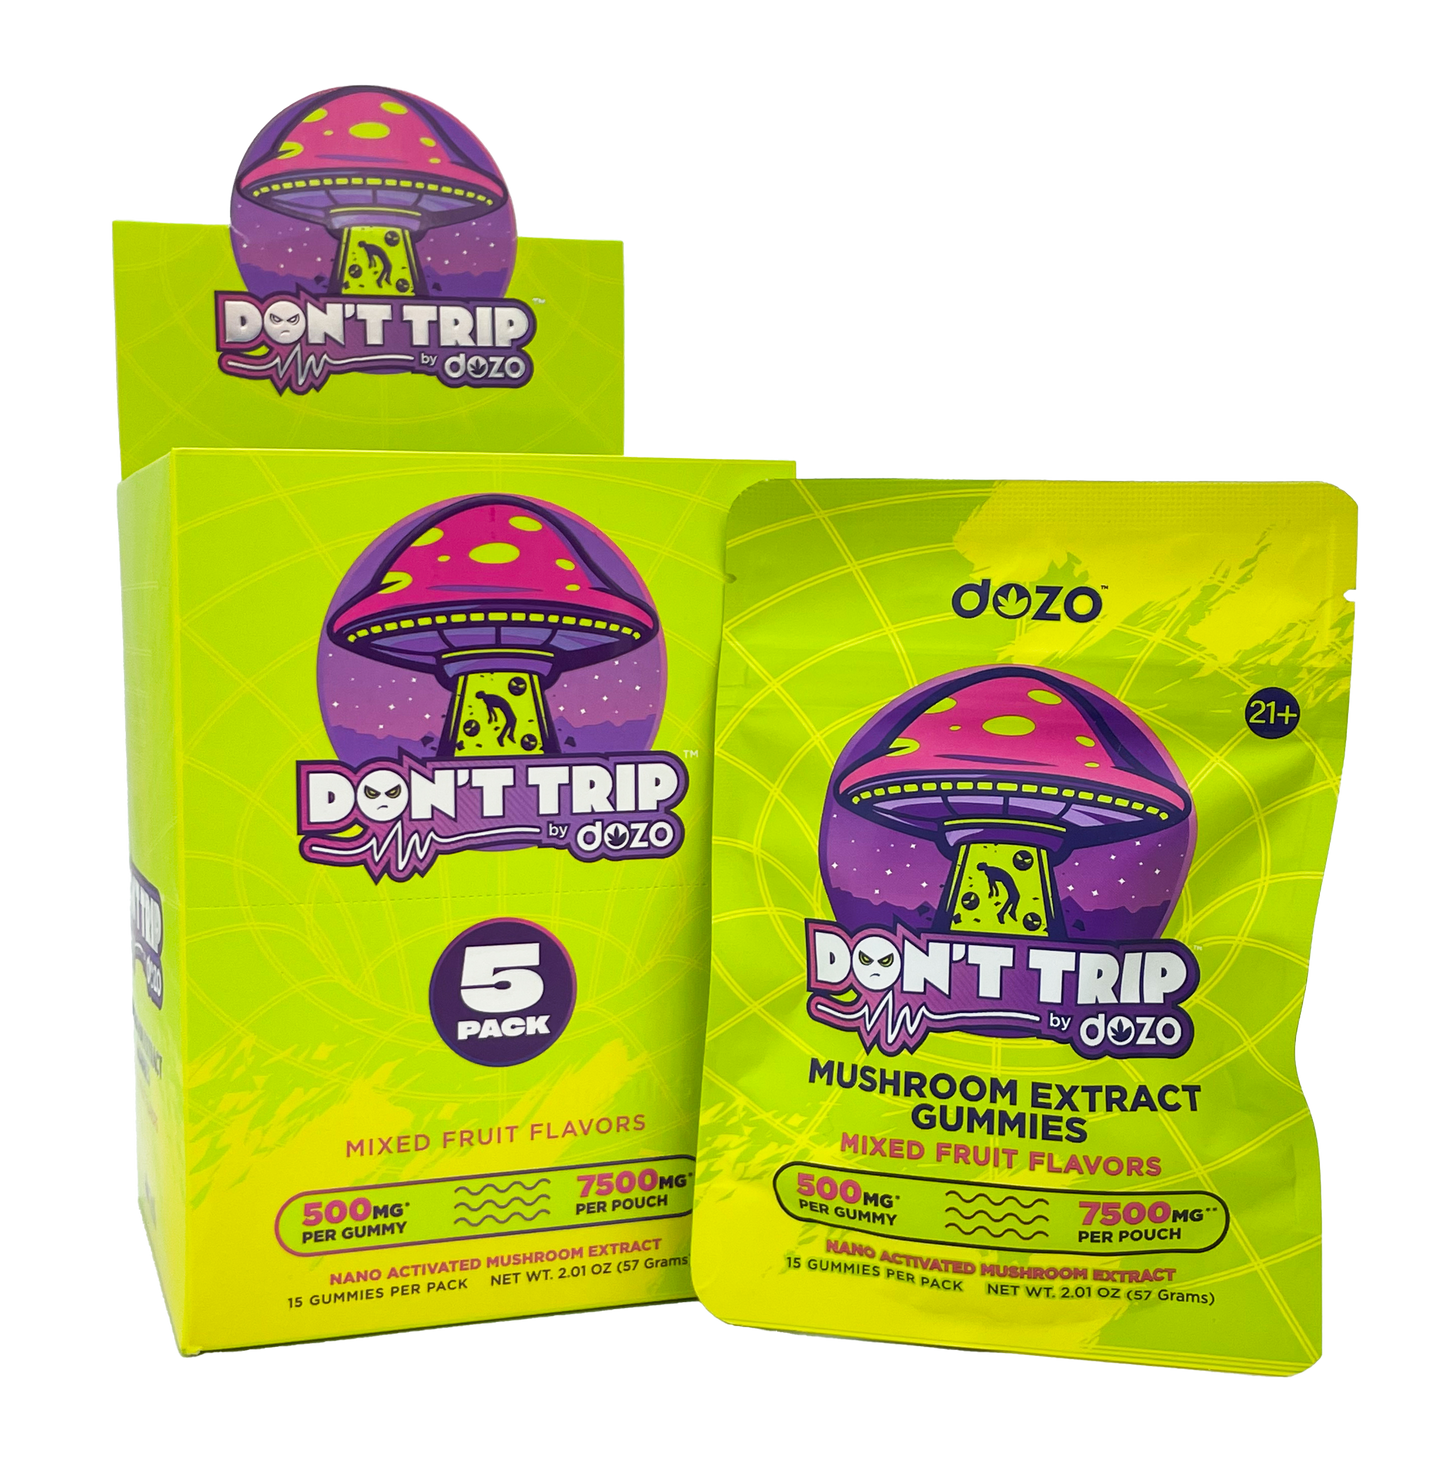 Dozo - "Dont Trip" Mushroom Gummies (5ct Box) - 7500mg per Pouch